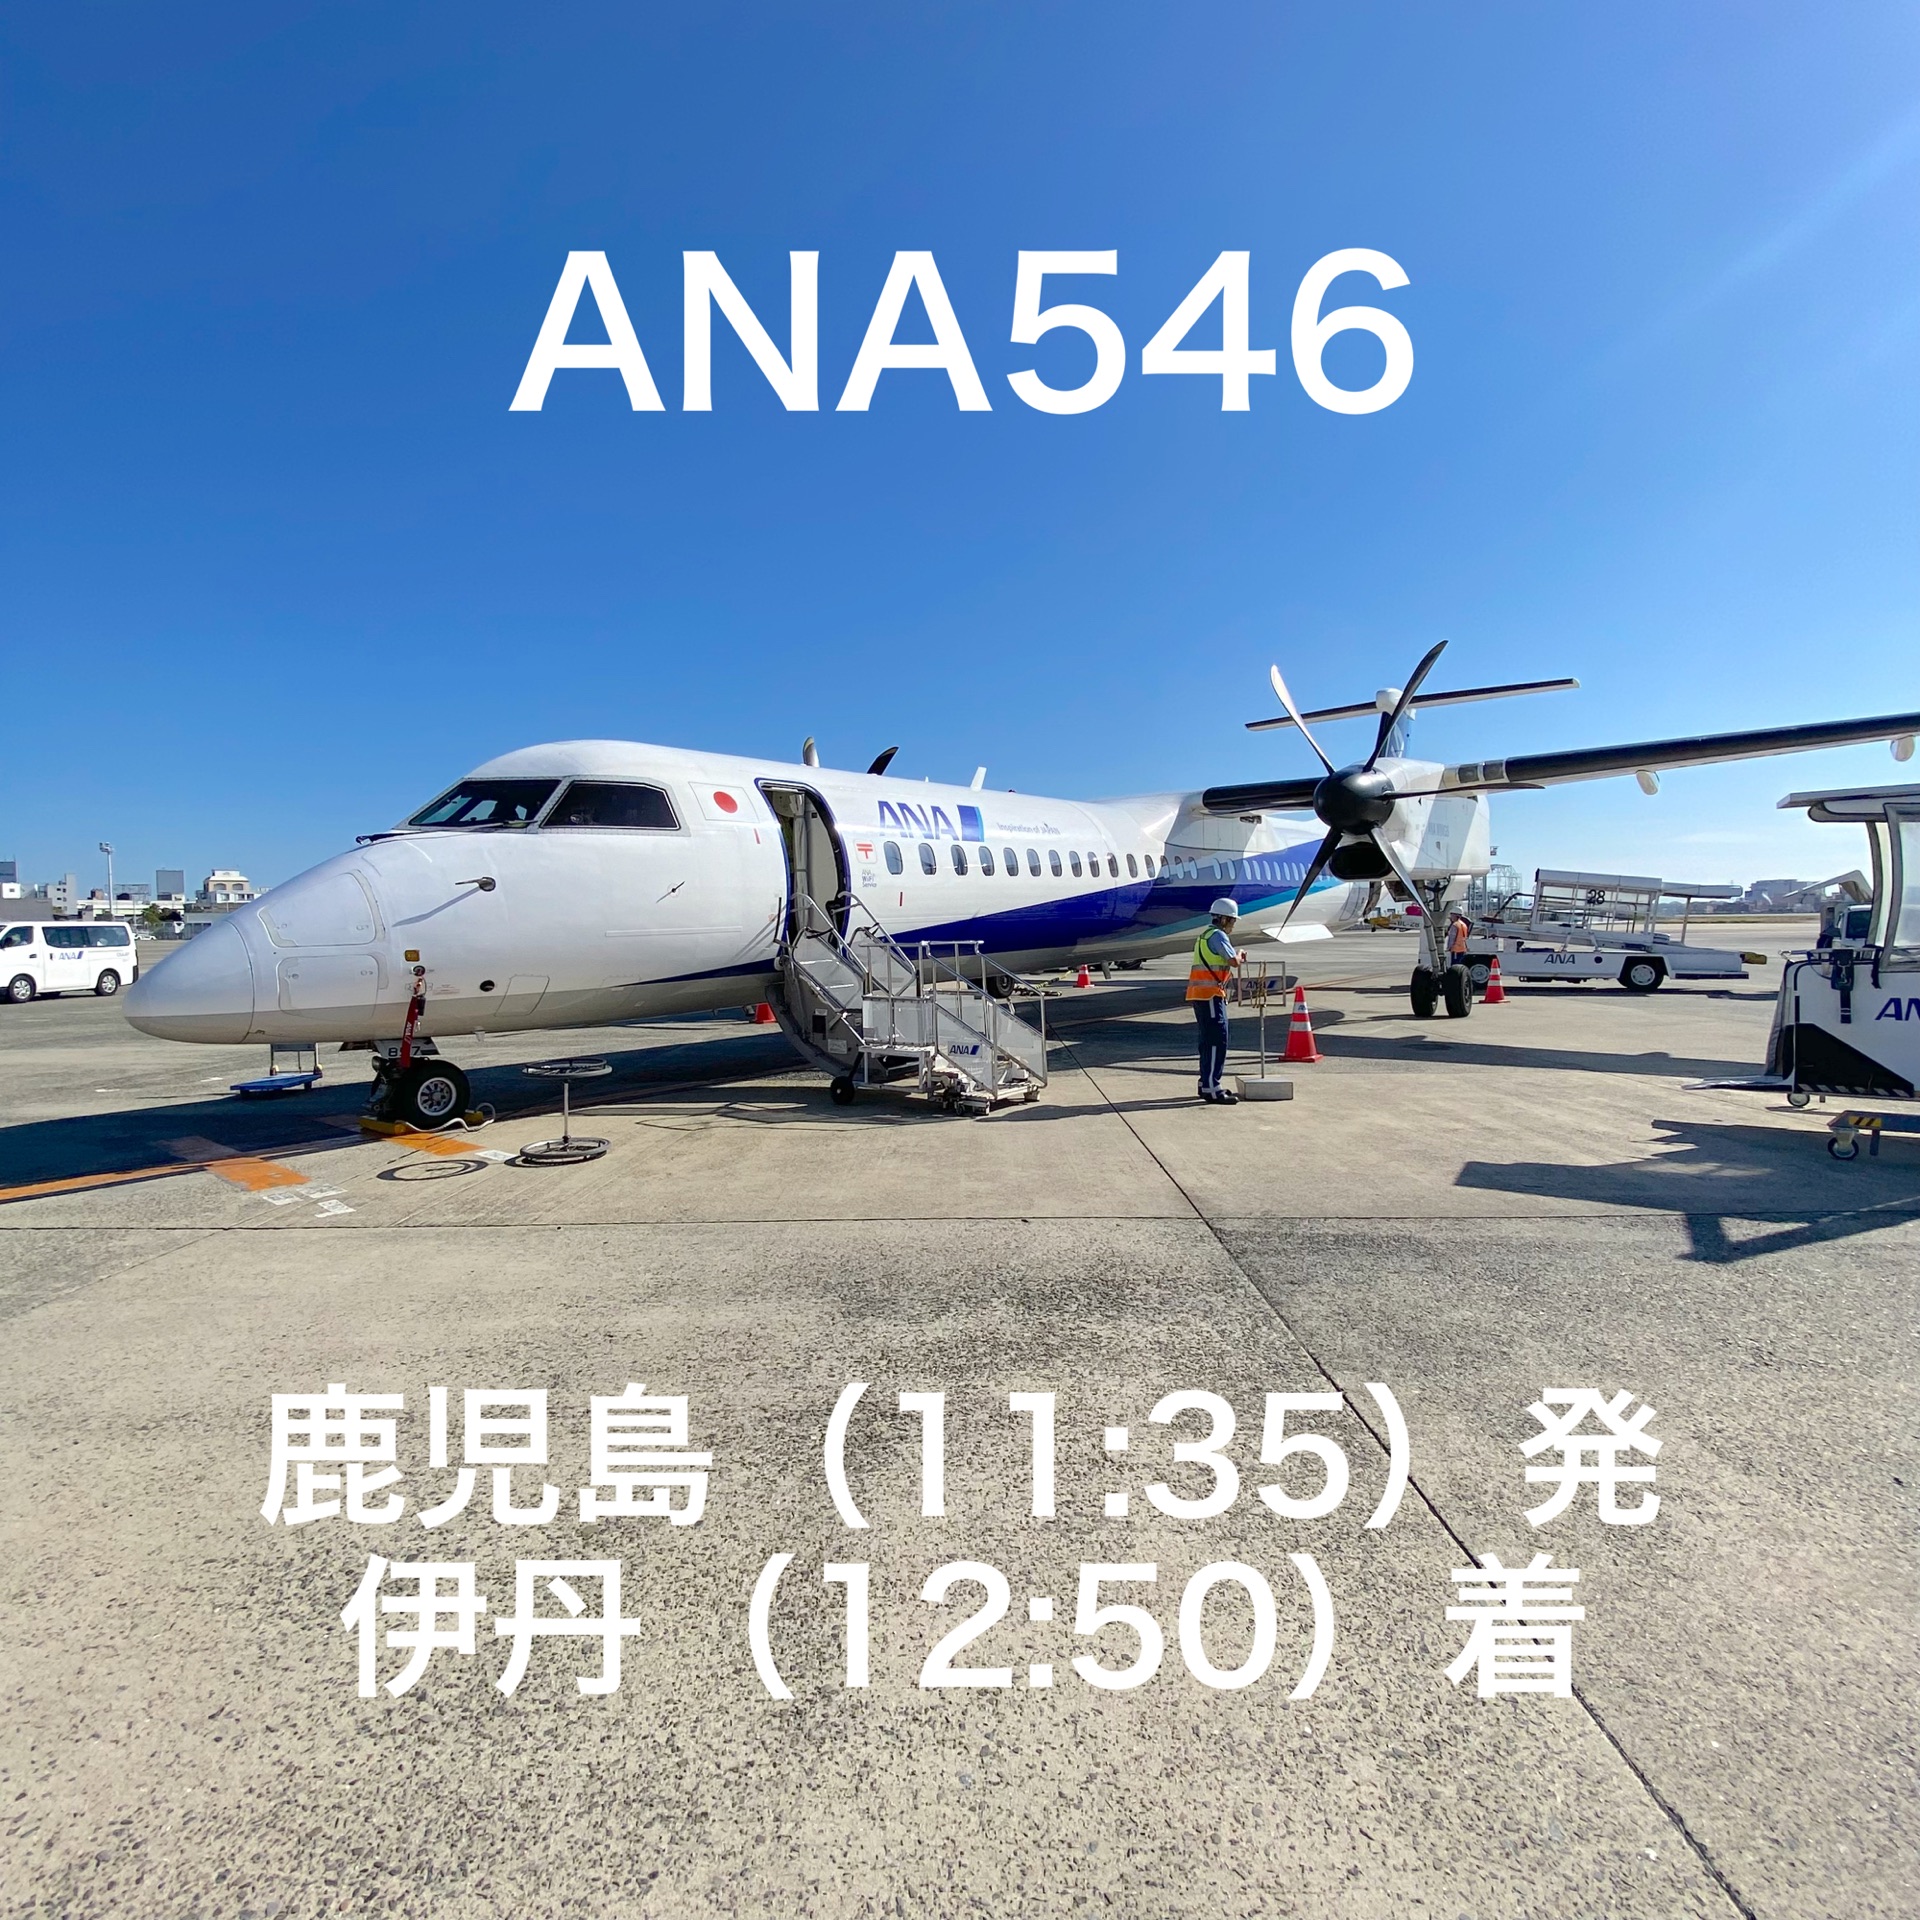 ANA546螺旋桨机DHC8-Q400登机